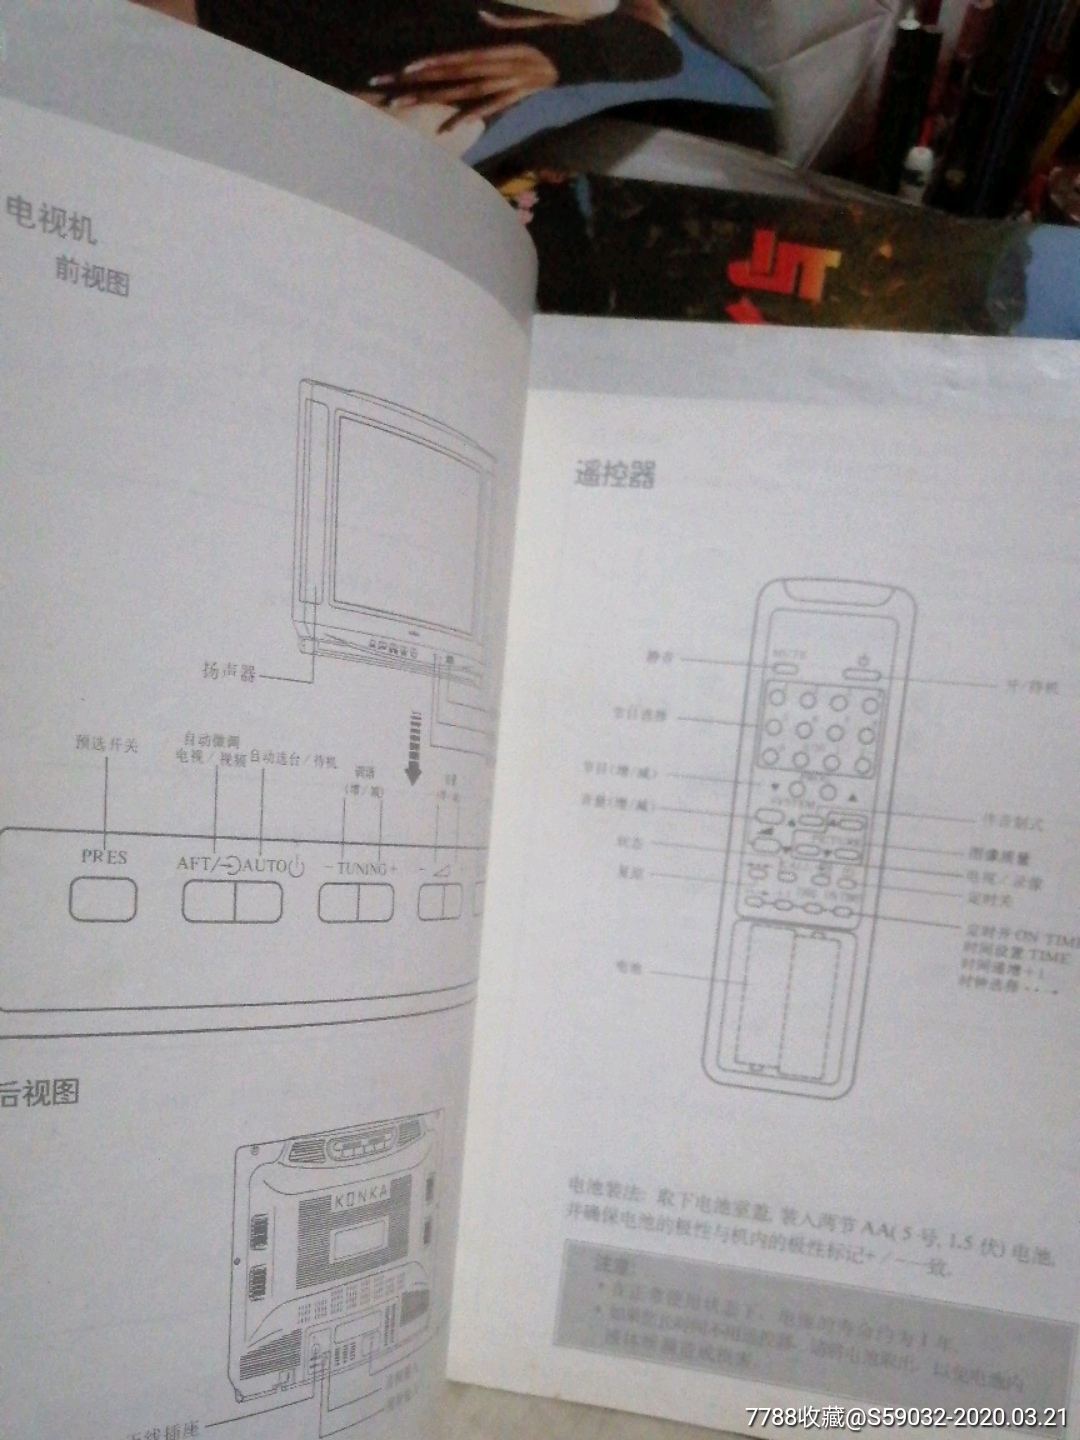 康佳彩霸(型号t5402a)电视机使用说明书